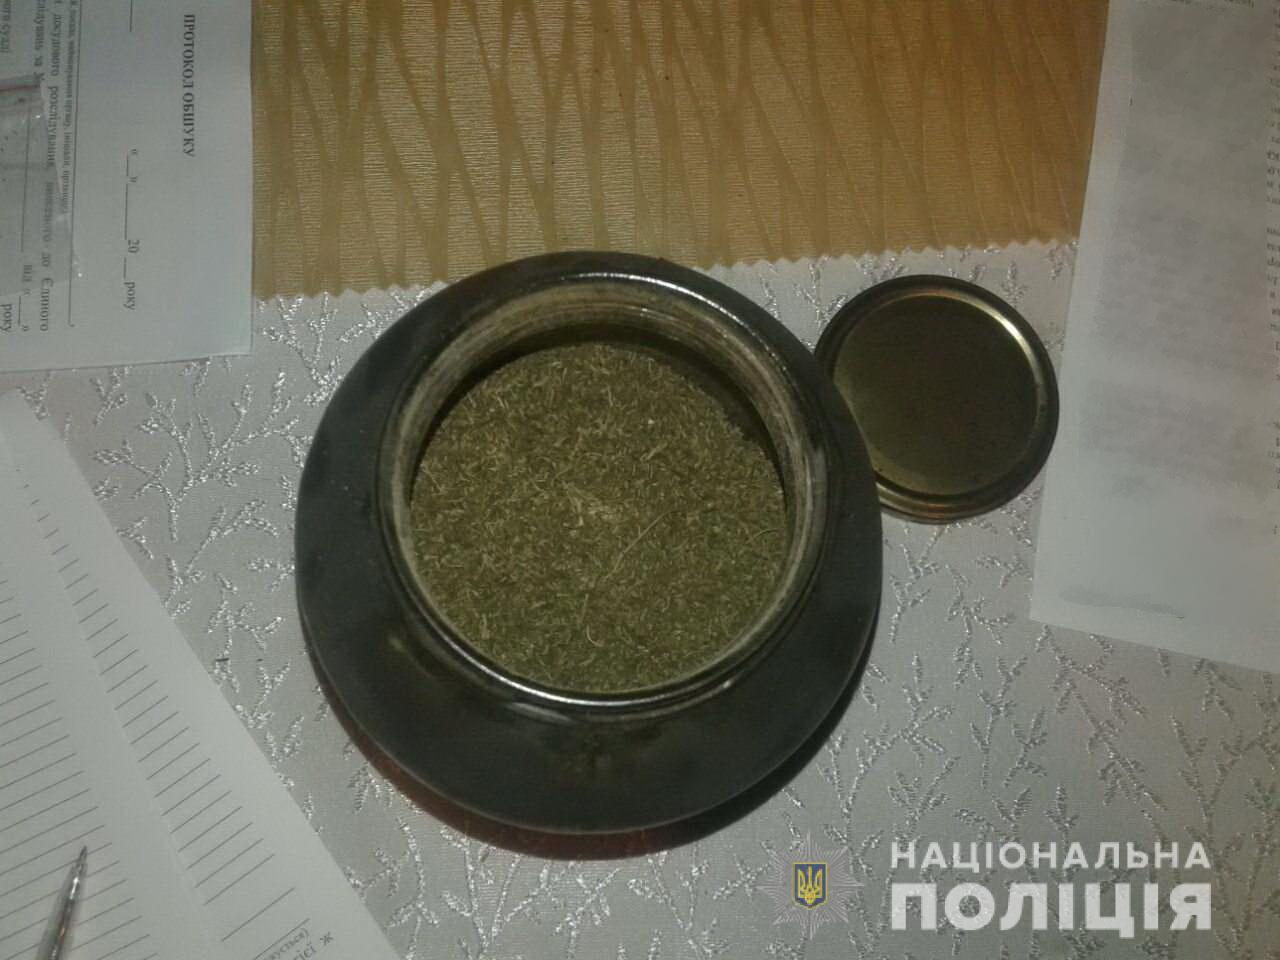 Півкілограма марихуани знайшли в будинку мешканця Хмільника, що на Іршавщині (ФОТО)